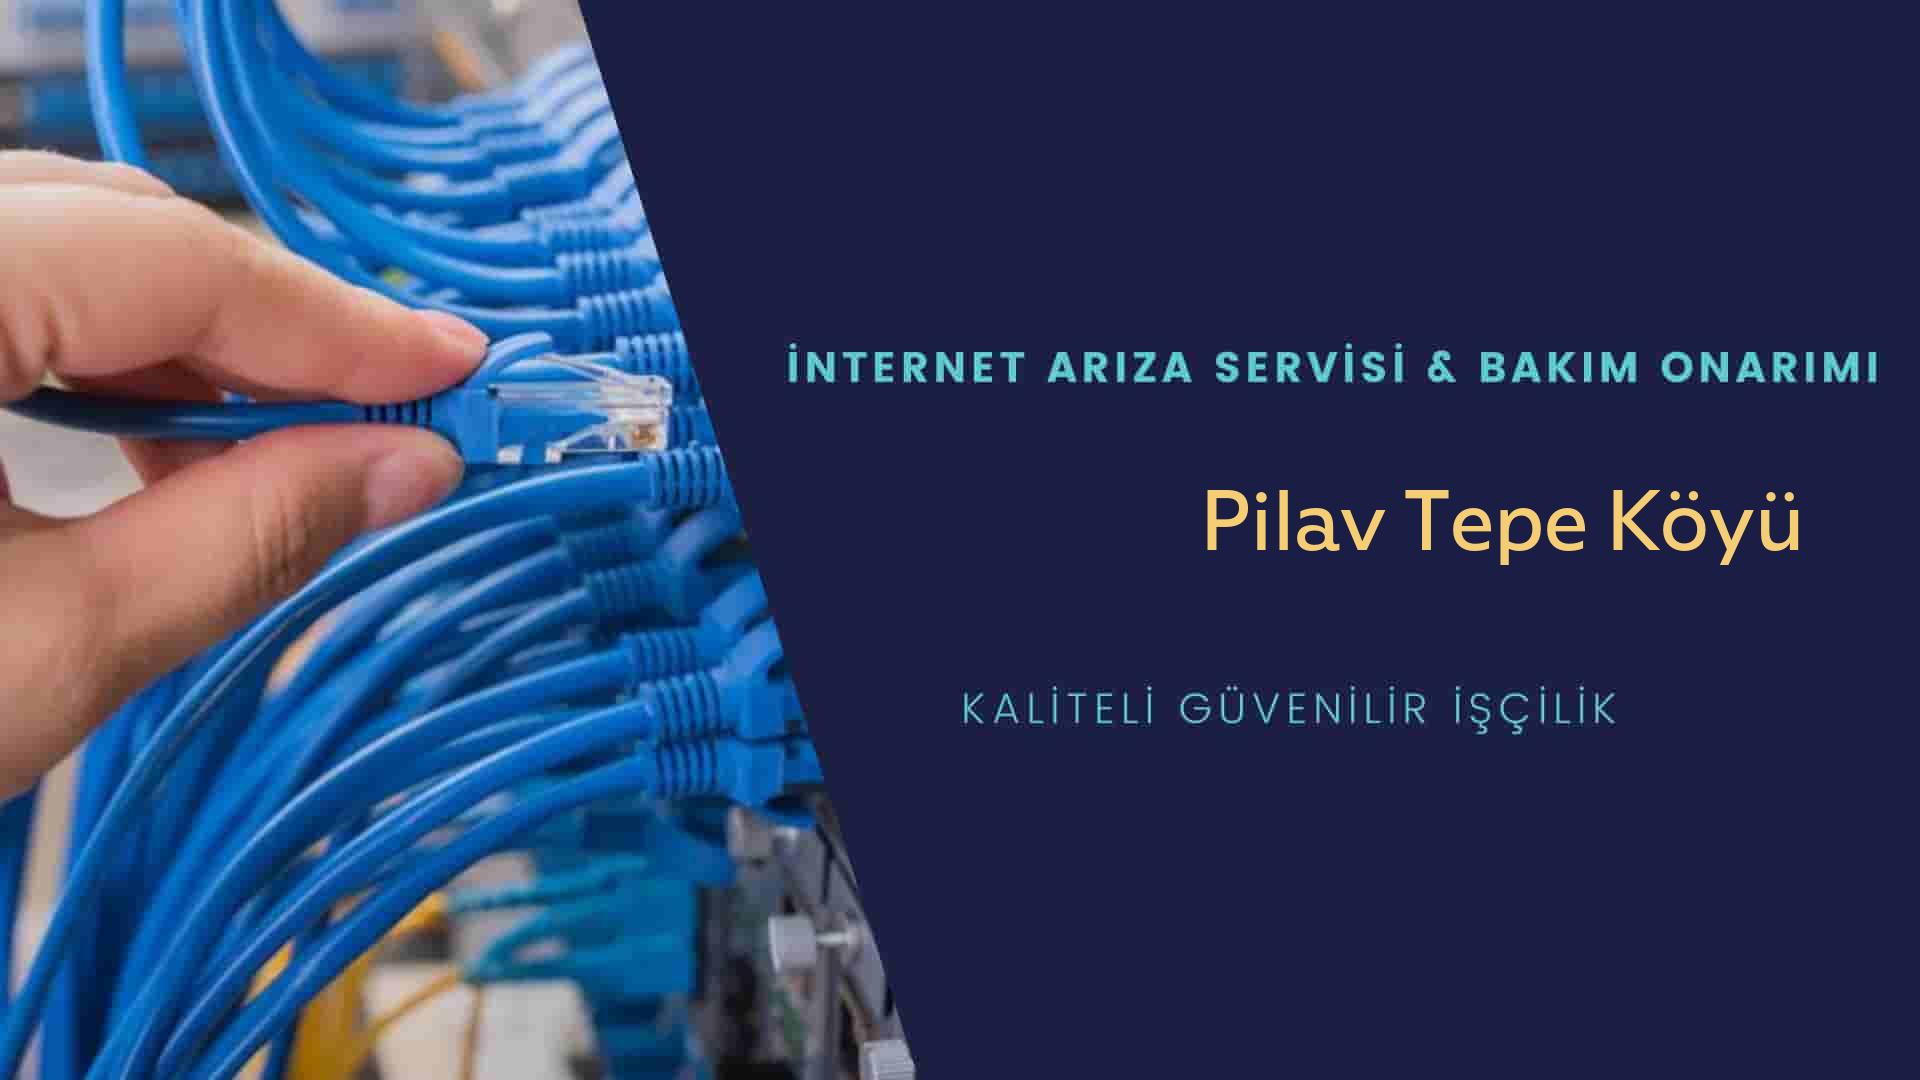 Pilav Tepe Köyü internet kablosu çekimi yapan yerler veya elektrikçiler mi? arıyorsunuz doğru yerdesiniz o zaman sizlere 7/24 yardımcı olacak profesyonel ustalarımız bir telefon kadar yakındır size.